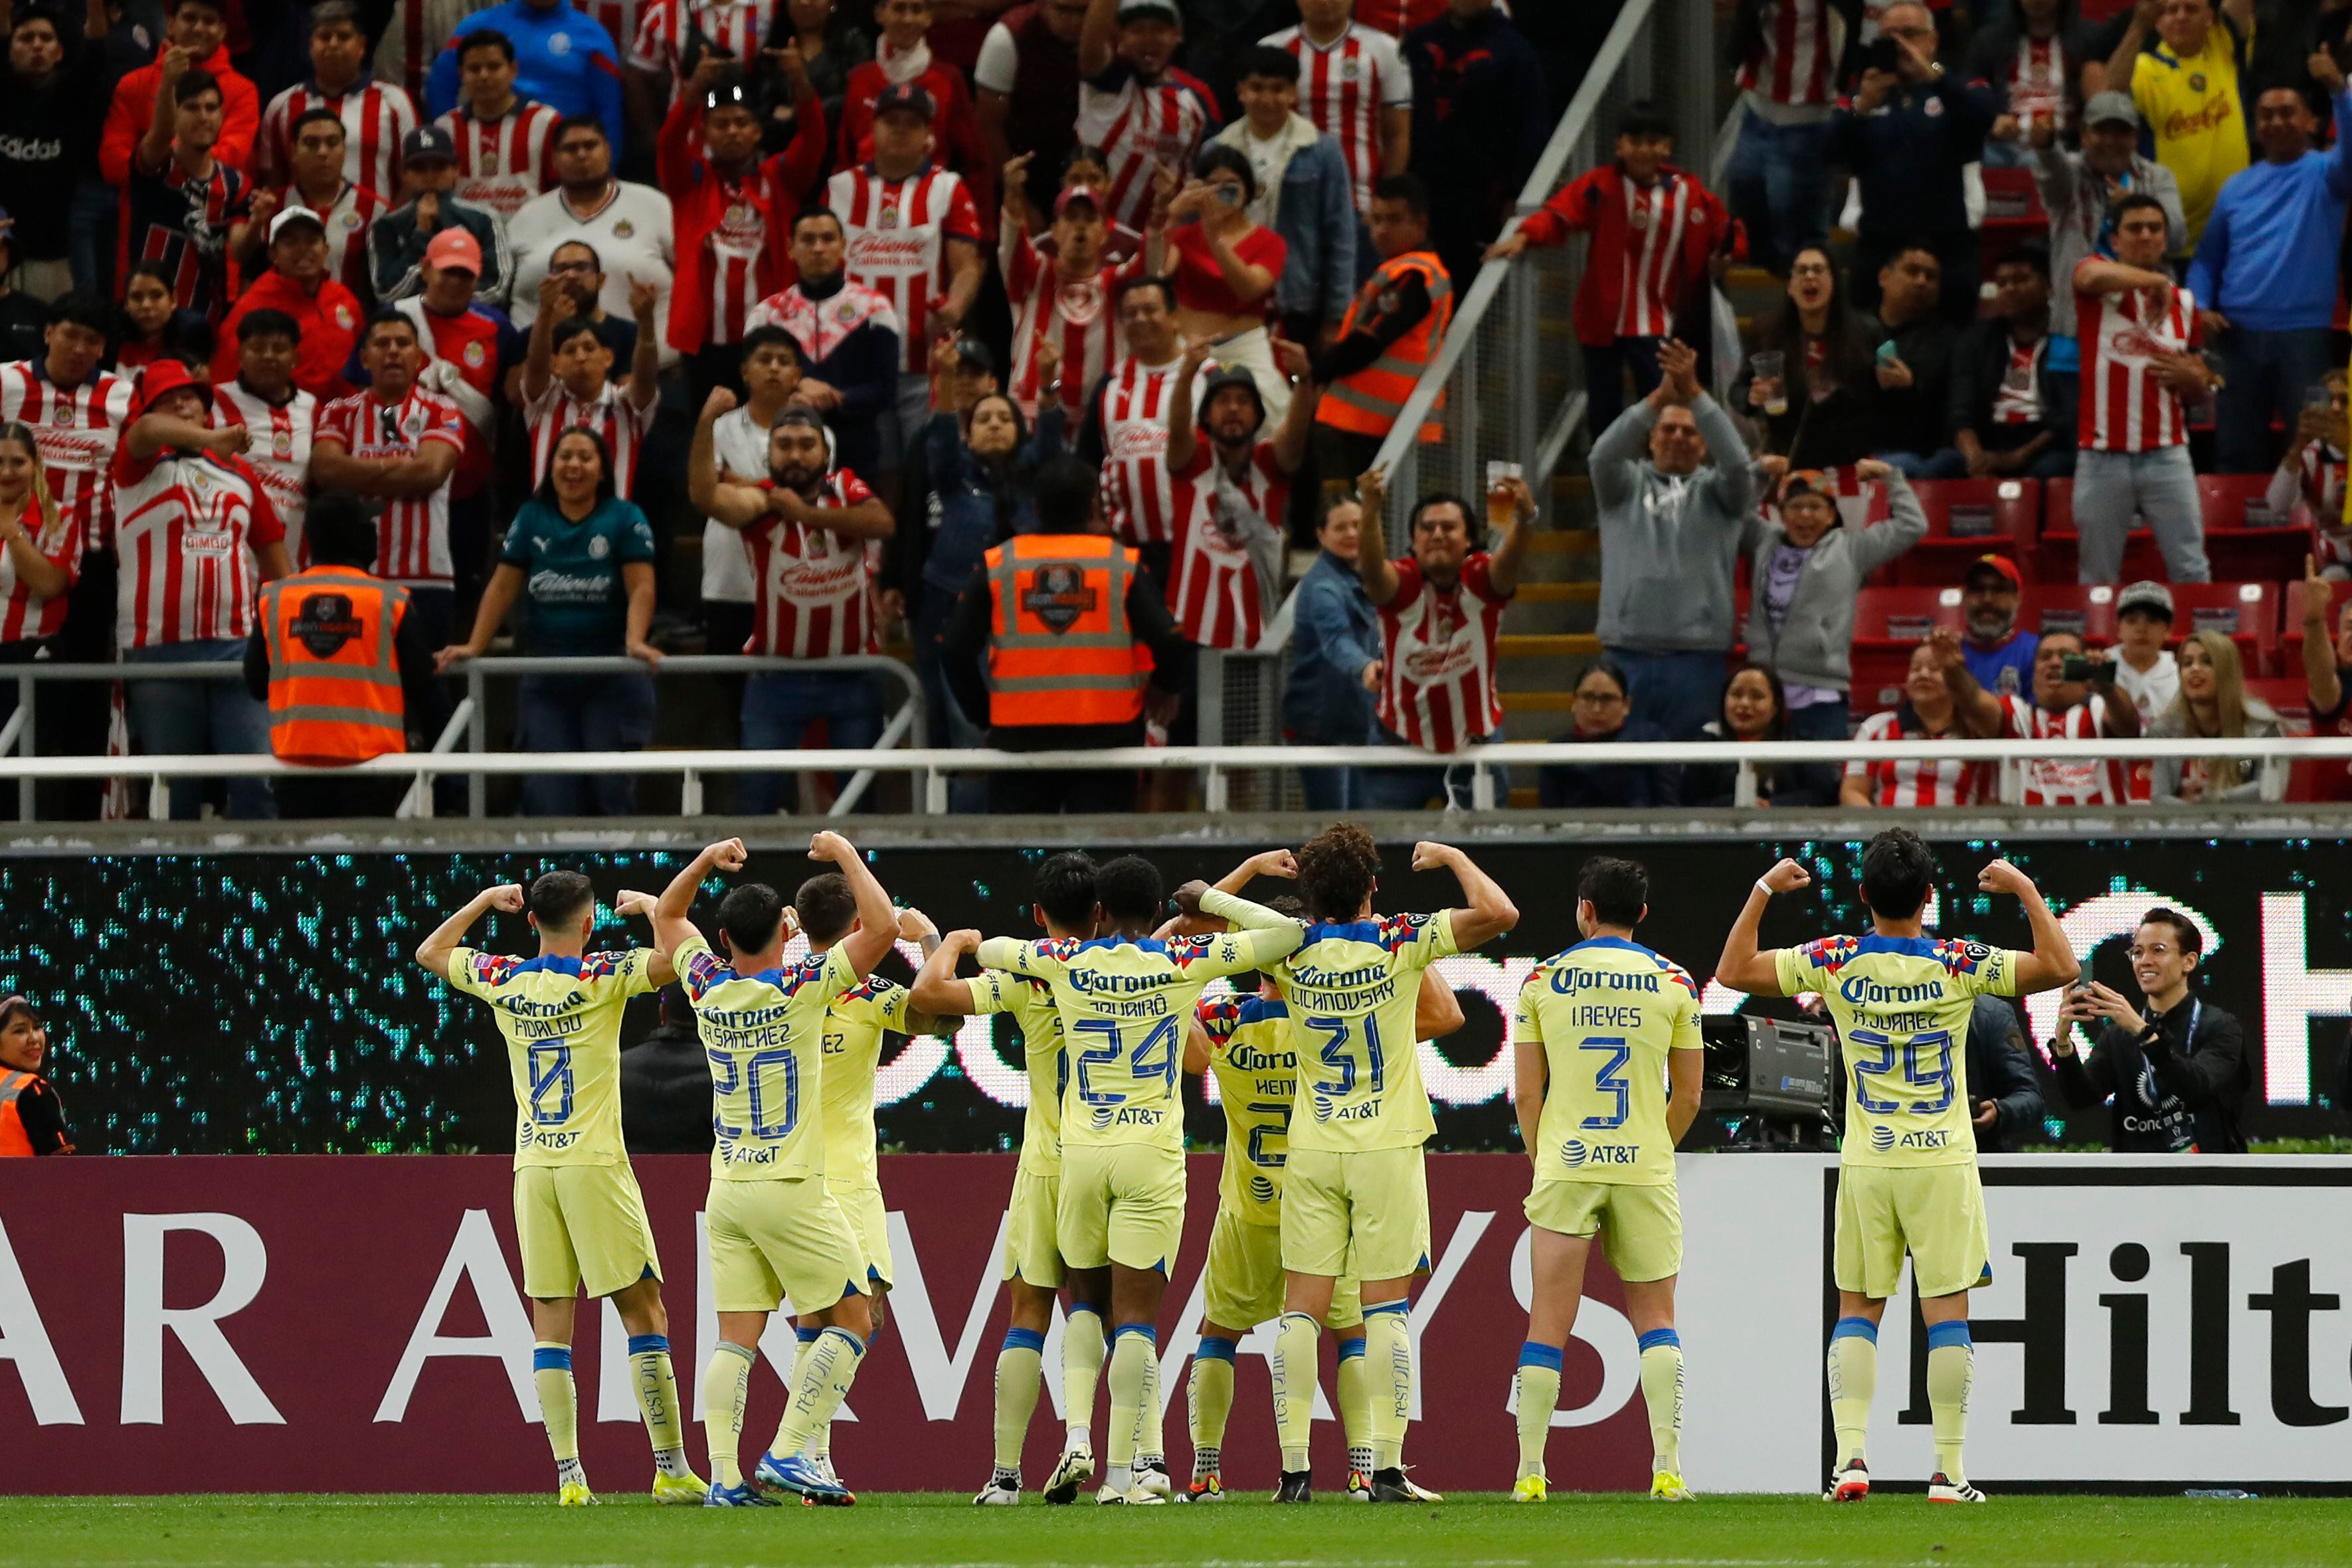 Jugadores de América celebran una anotación de Henry Martín ante Guadalajara este miércoles, durante un partido de octavos de final de la Copa de Campeones Concacaf. EFE/ Francisco Guasco